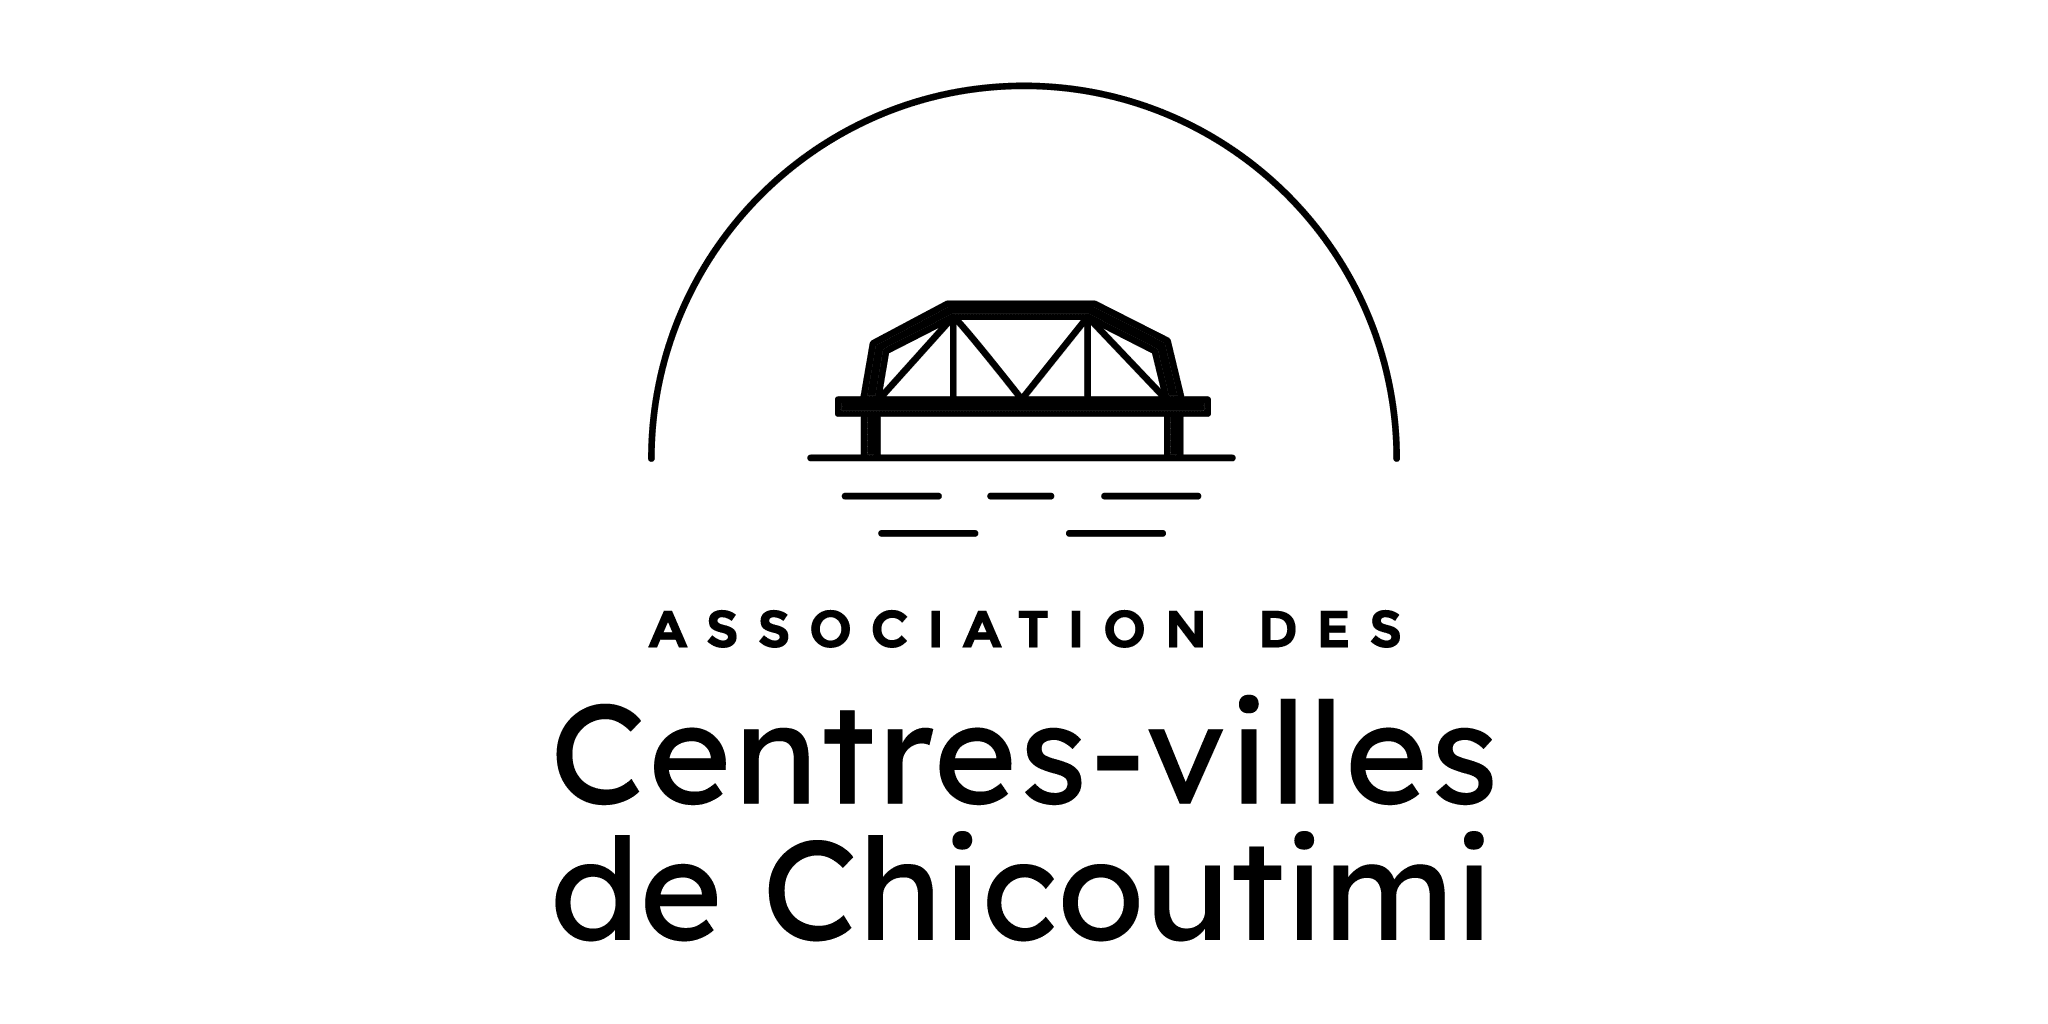 Centre-ville de Chicoutimi/Association des centres-villes de Chicoutimi